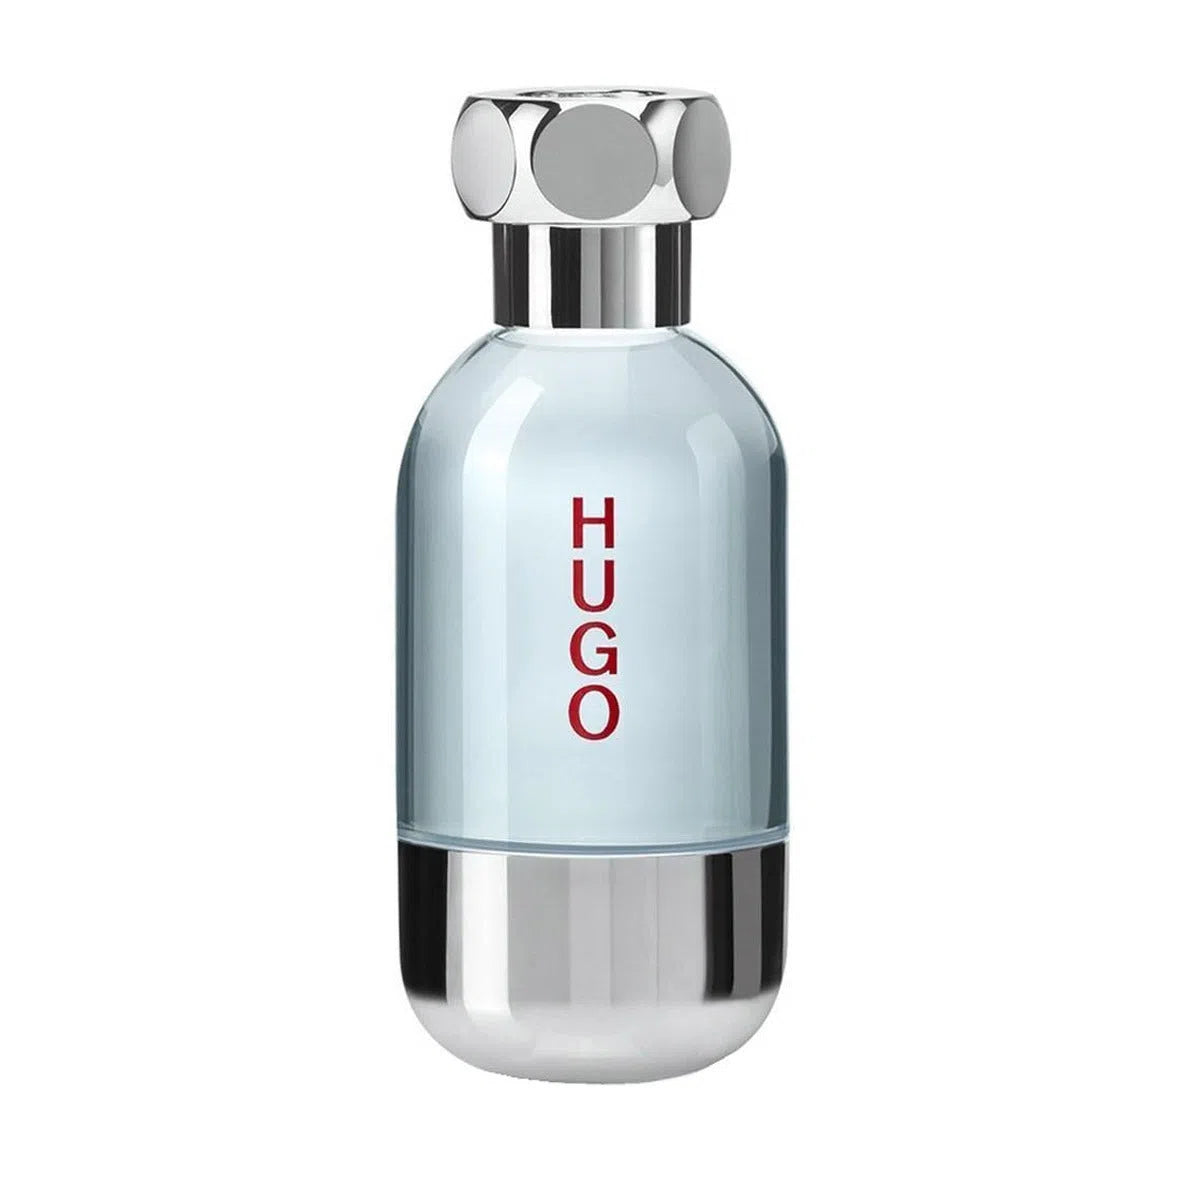 Hugo Boss Hugo Element 90ml